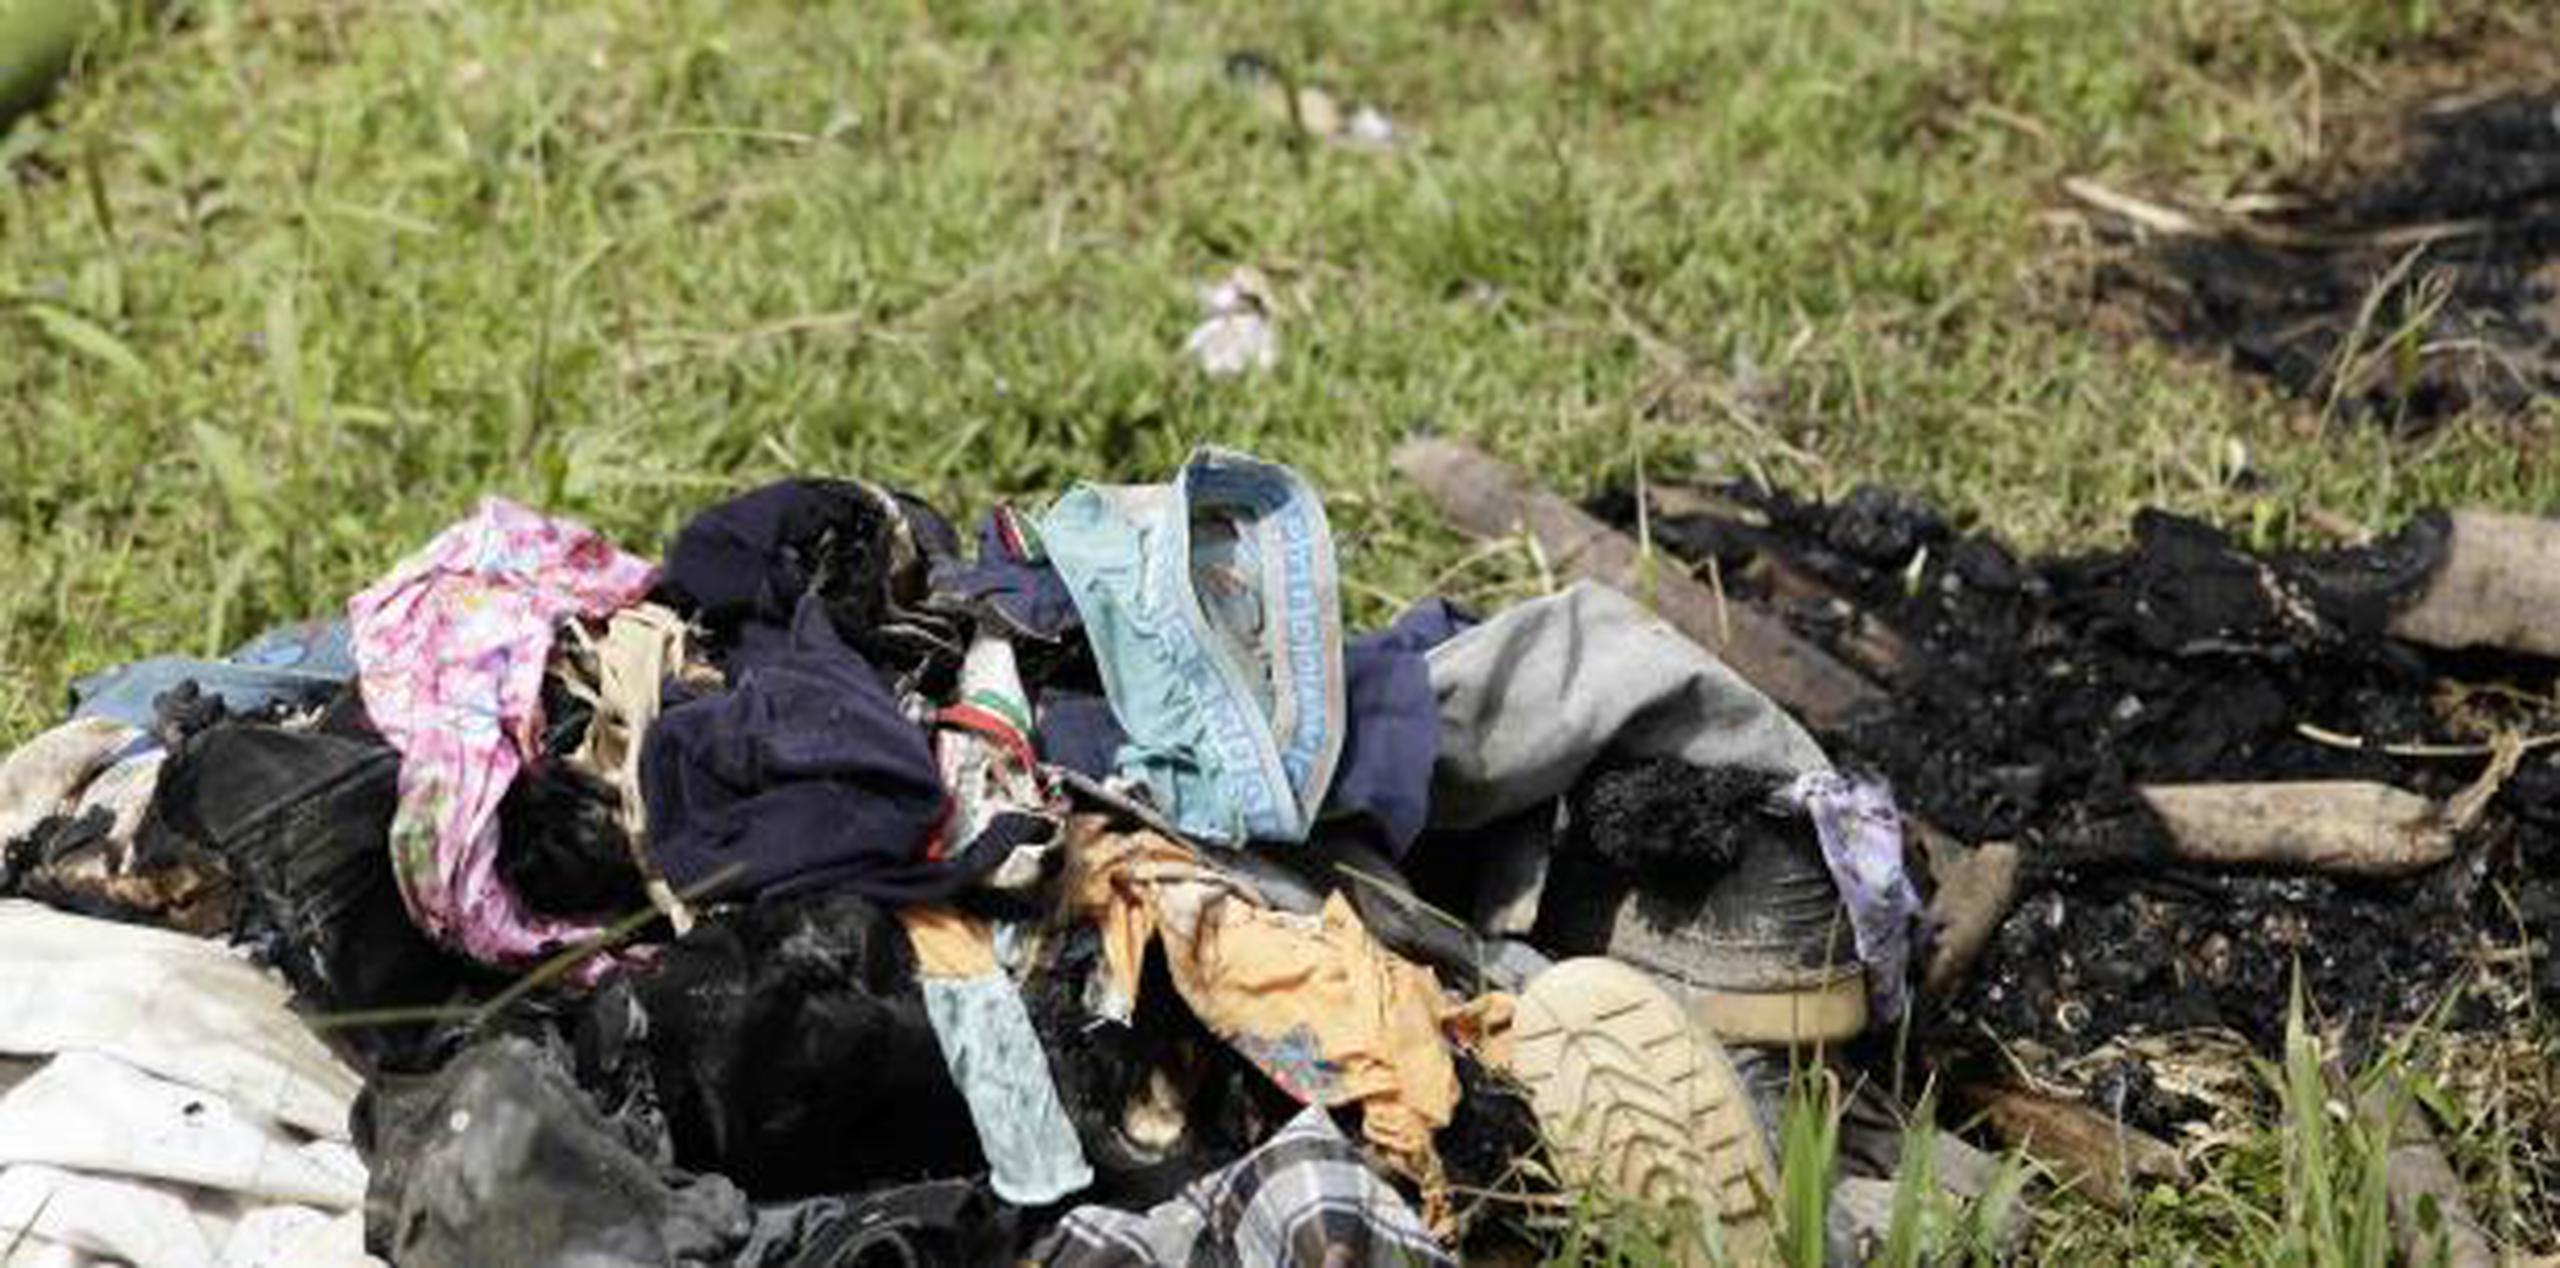 Ropa quemada de personas asesinadas en un ritual religioso en la comunidad selvática de El Terrón, Panamá. (AP)